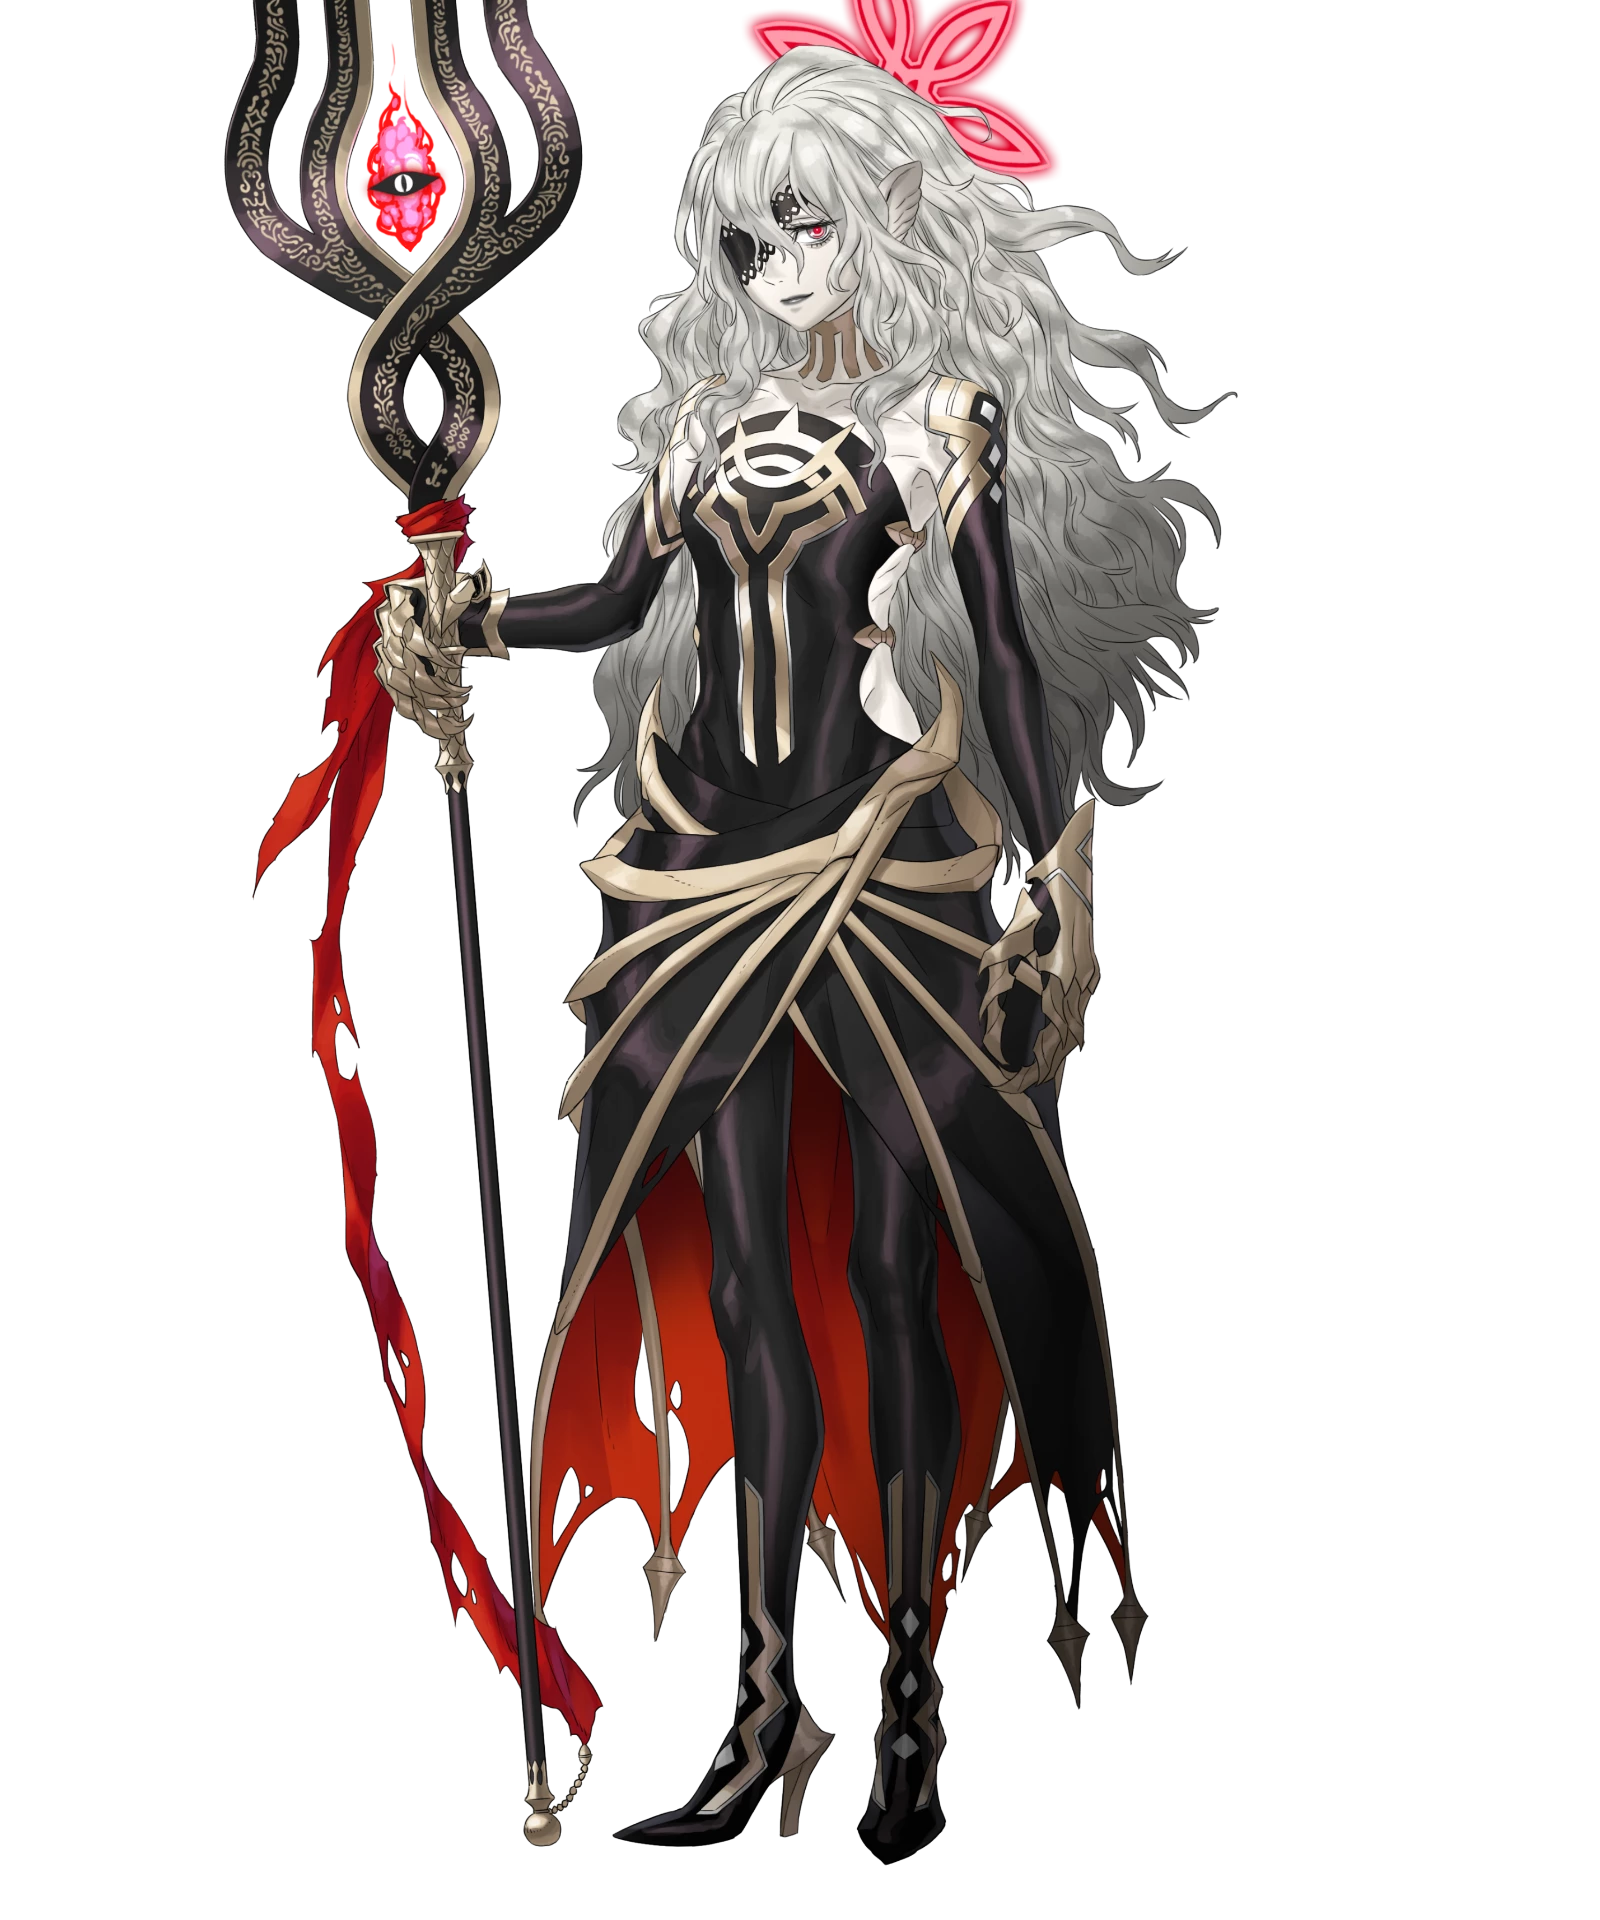 Lucia - Fire Emblem Wiki